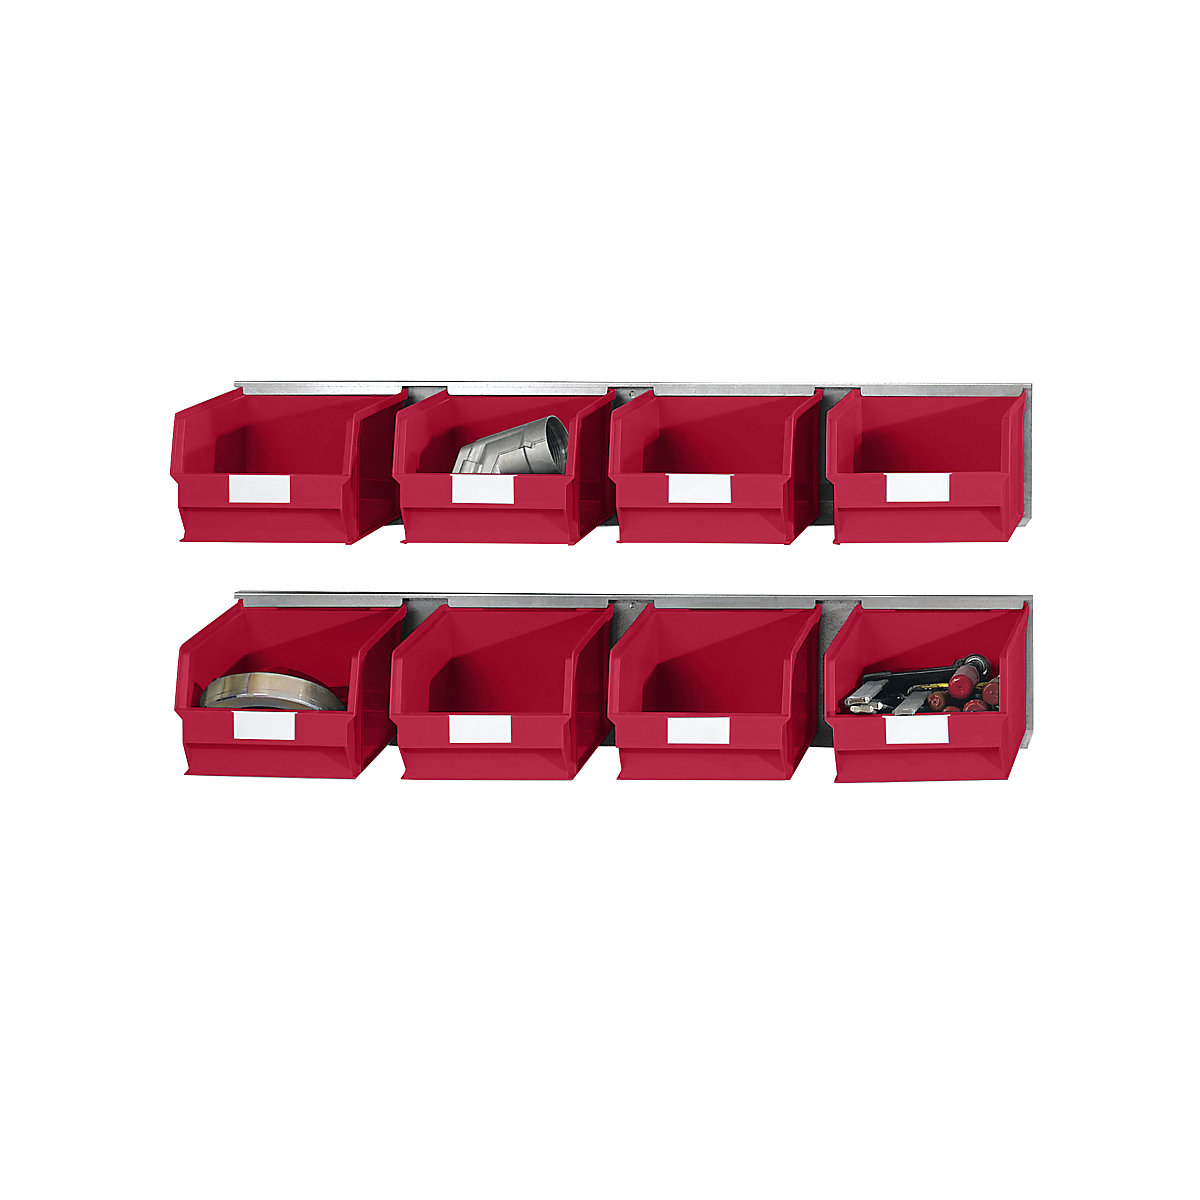 Conjunto de réguas para encaixe com caixas de armazenagem à vista, 2 réguas, 8 caixas, vermelho-3